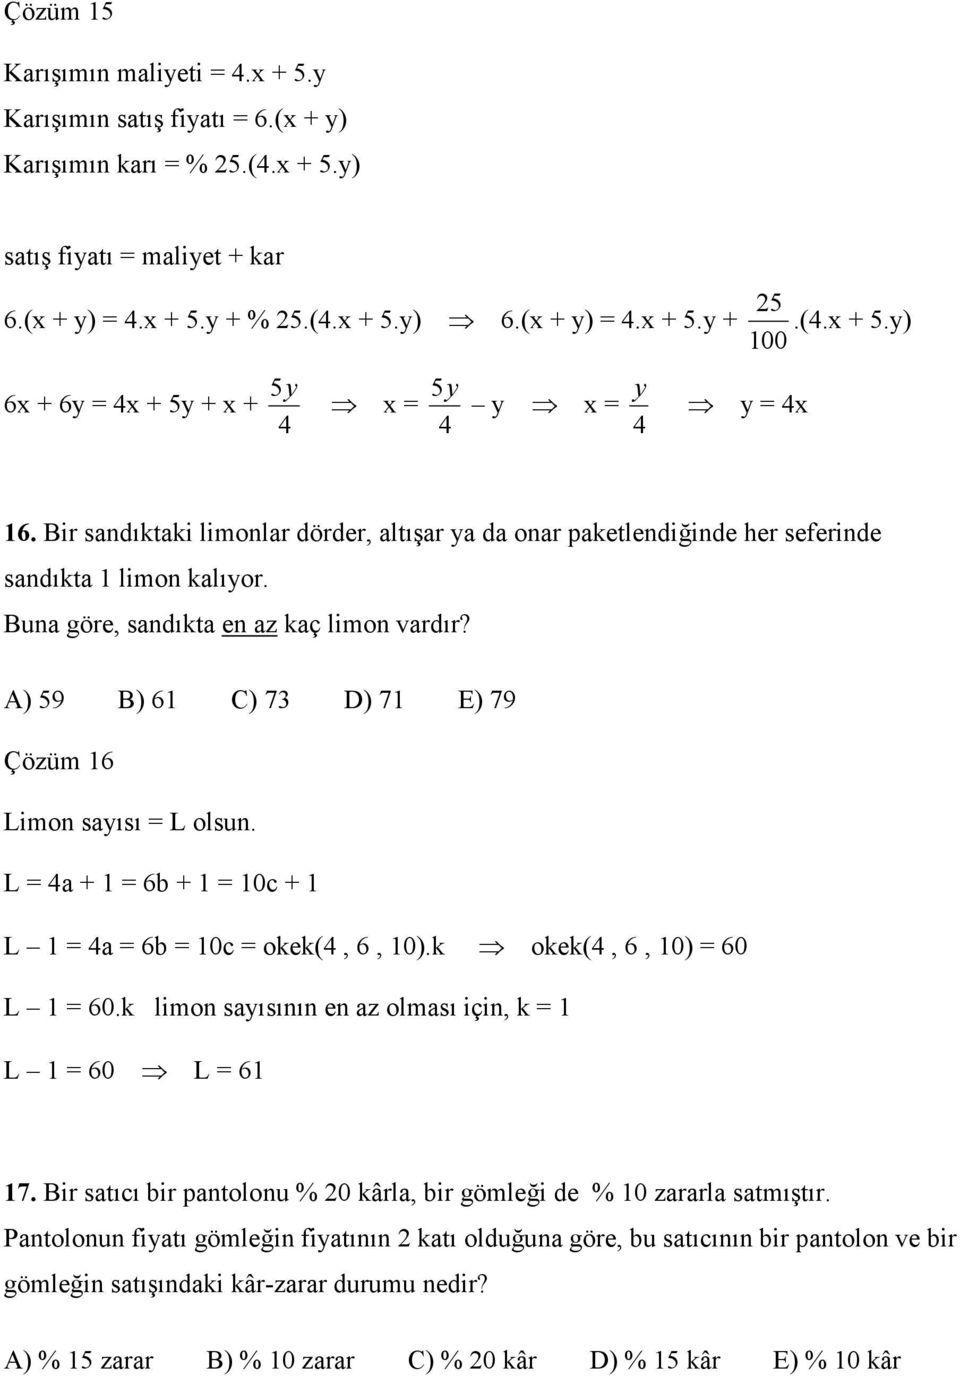 A) 59 B) 61 C) 73 D) 71 E) 79 Çözüm 16 Limon sayısı = L olsun. L = 4a + 1 = 6b + 1 = 10c + 1 L 1 = 4a = 6b = 10c = okek(4, 6, 10).k okek(4, 6, 10) = 60 L 1 = 60.